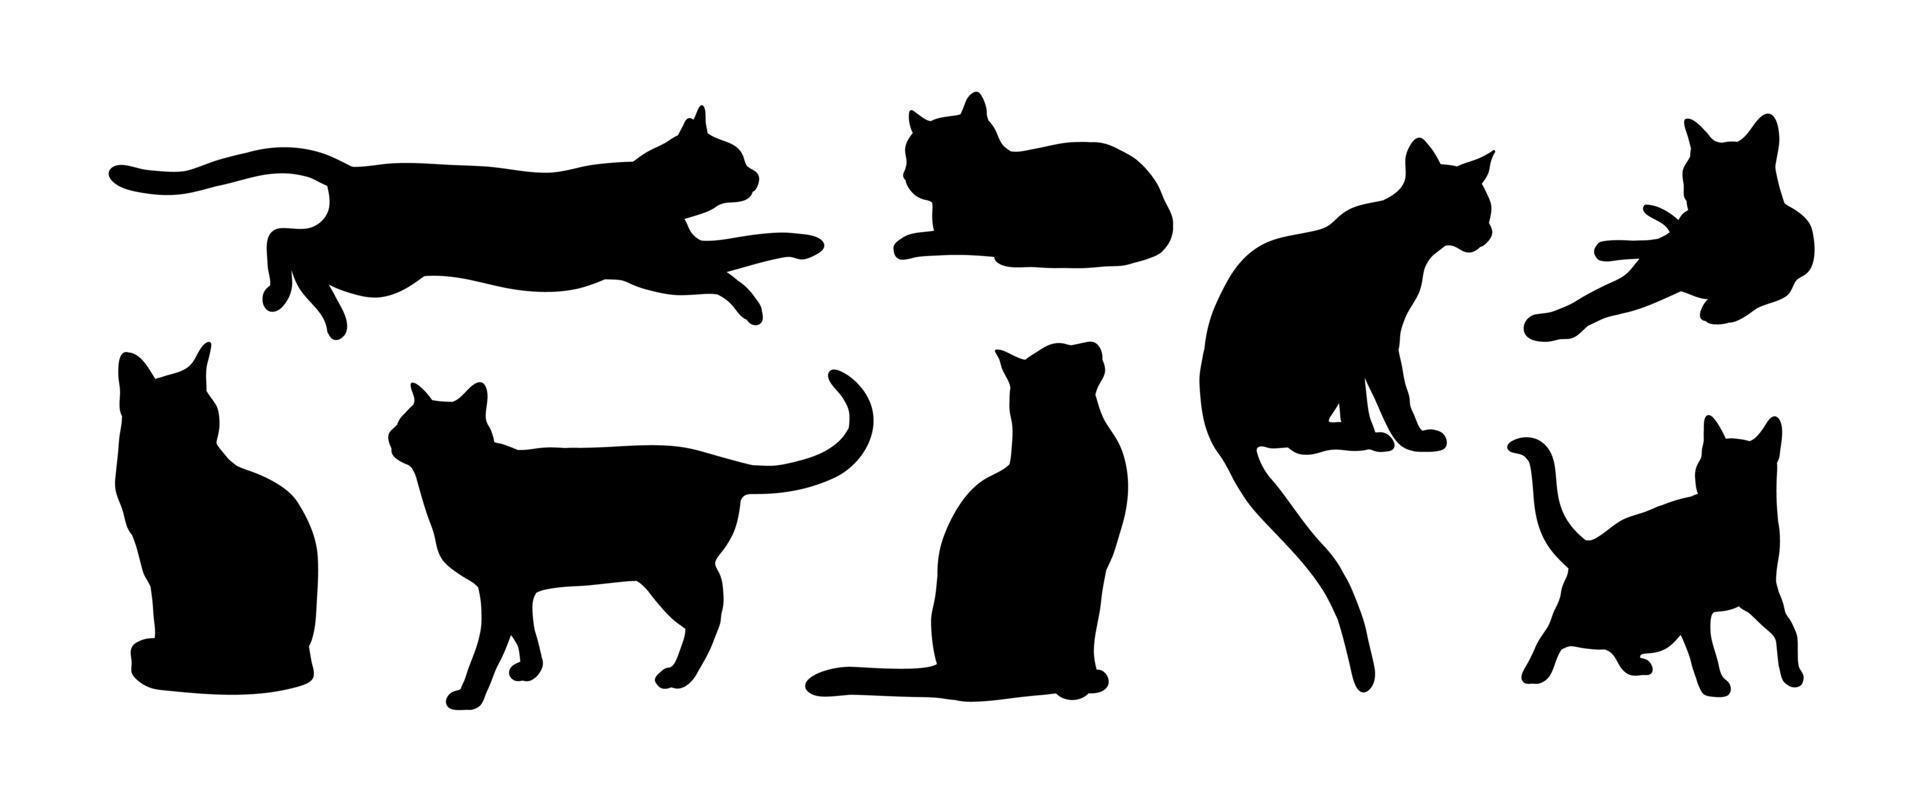 Resumo de silhueta de gato preto definido em poses diferentes. sentado, em pé, correndo etc. ícone, ilustração em vetor logotipo.